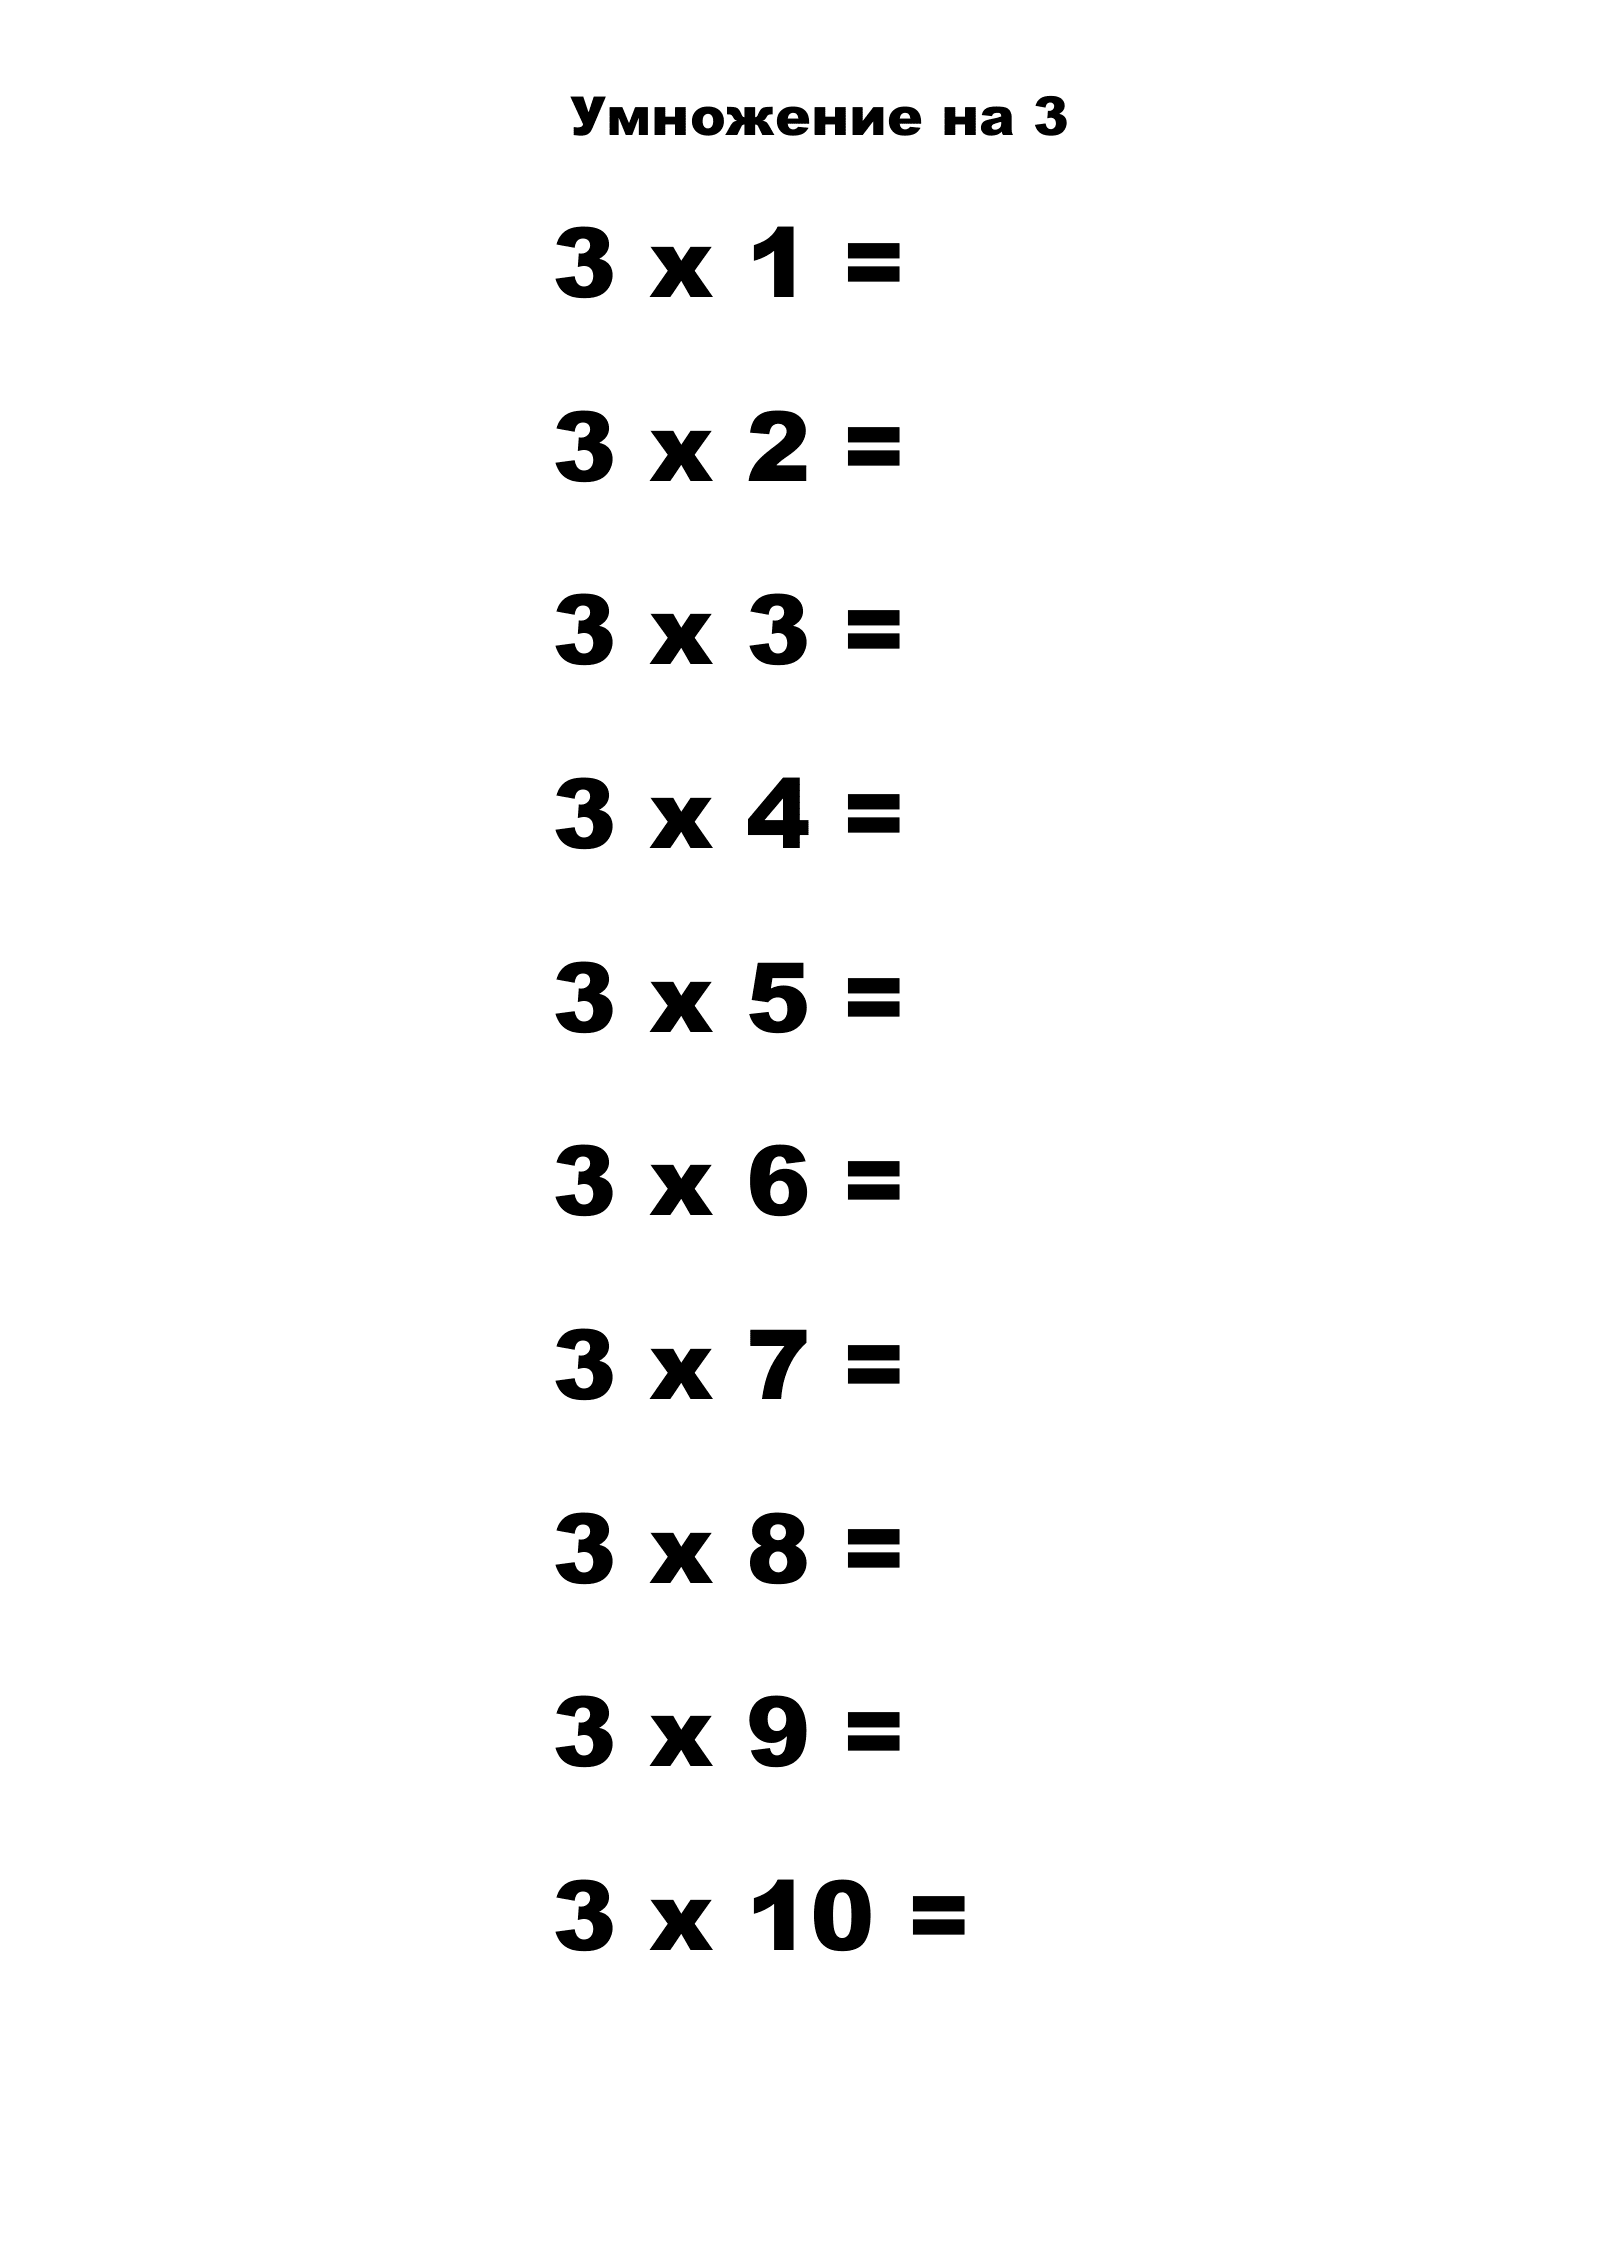 Таблица умножения на 3 без ответов. Распечатать